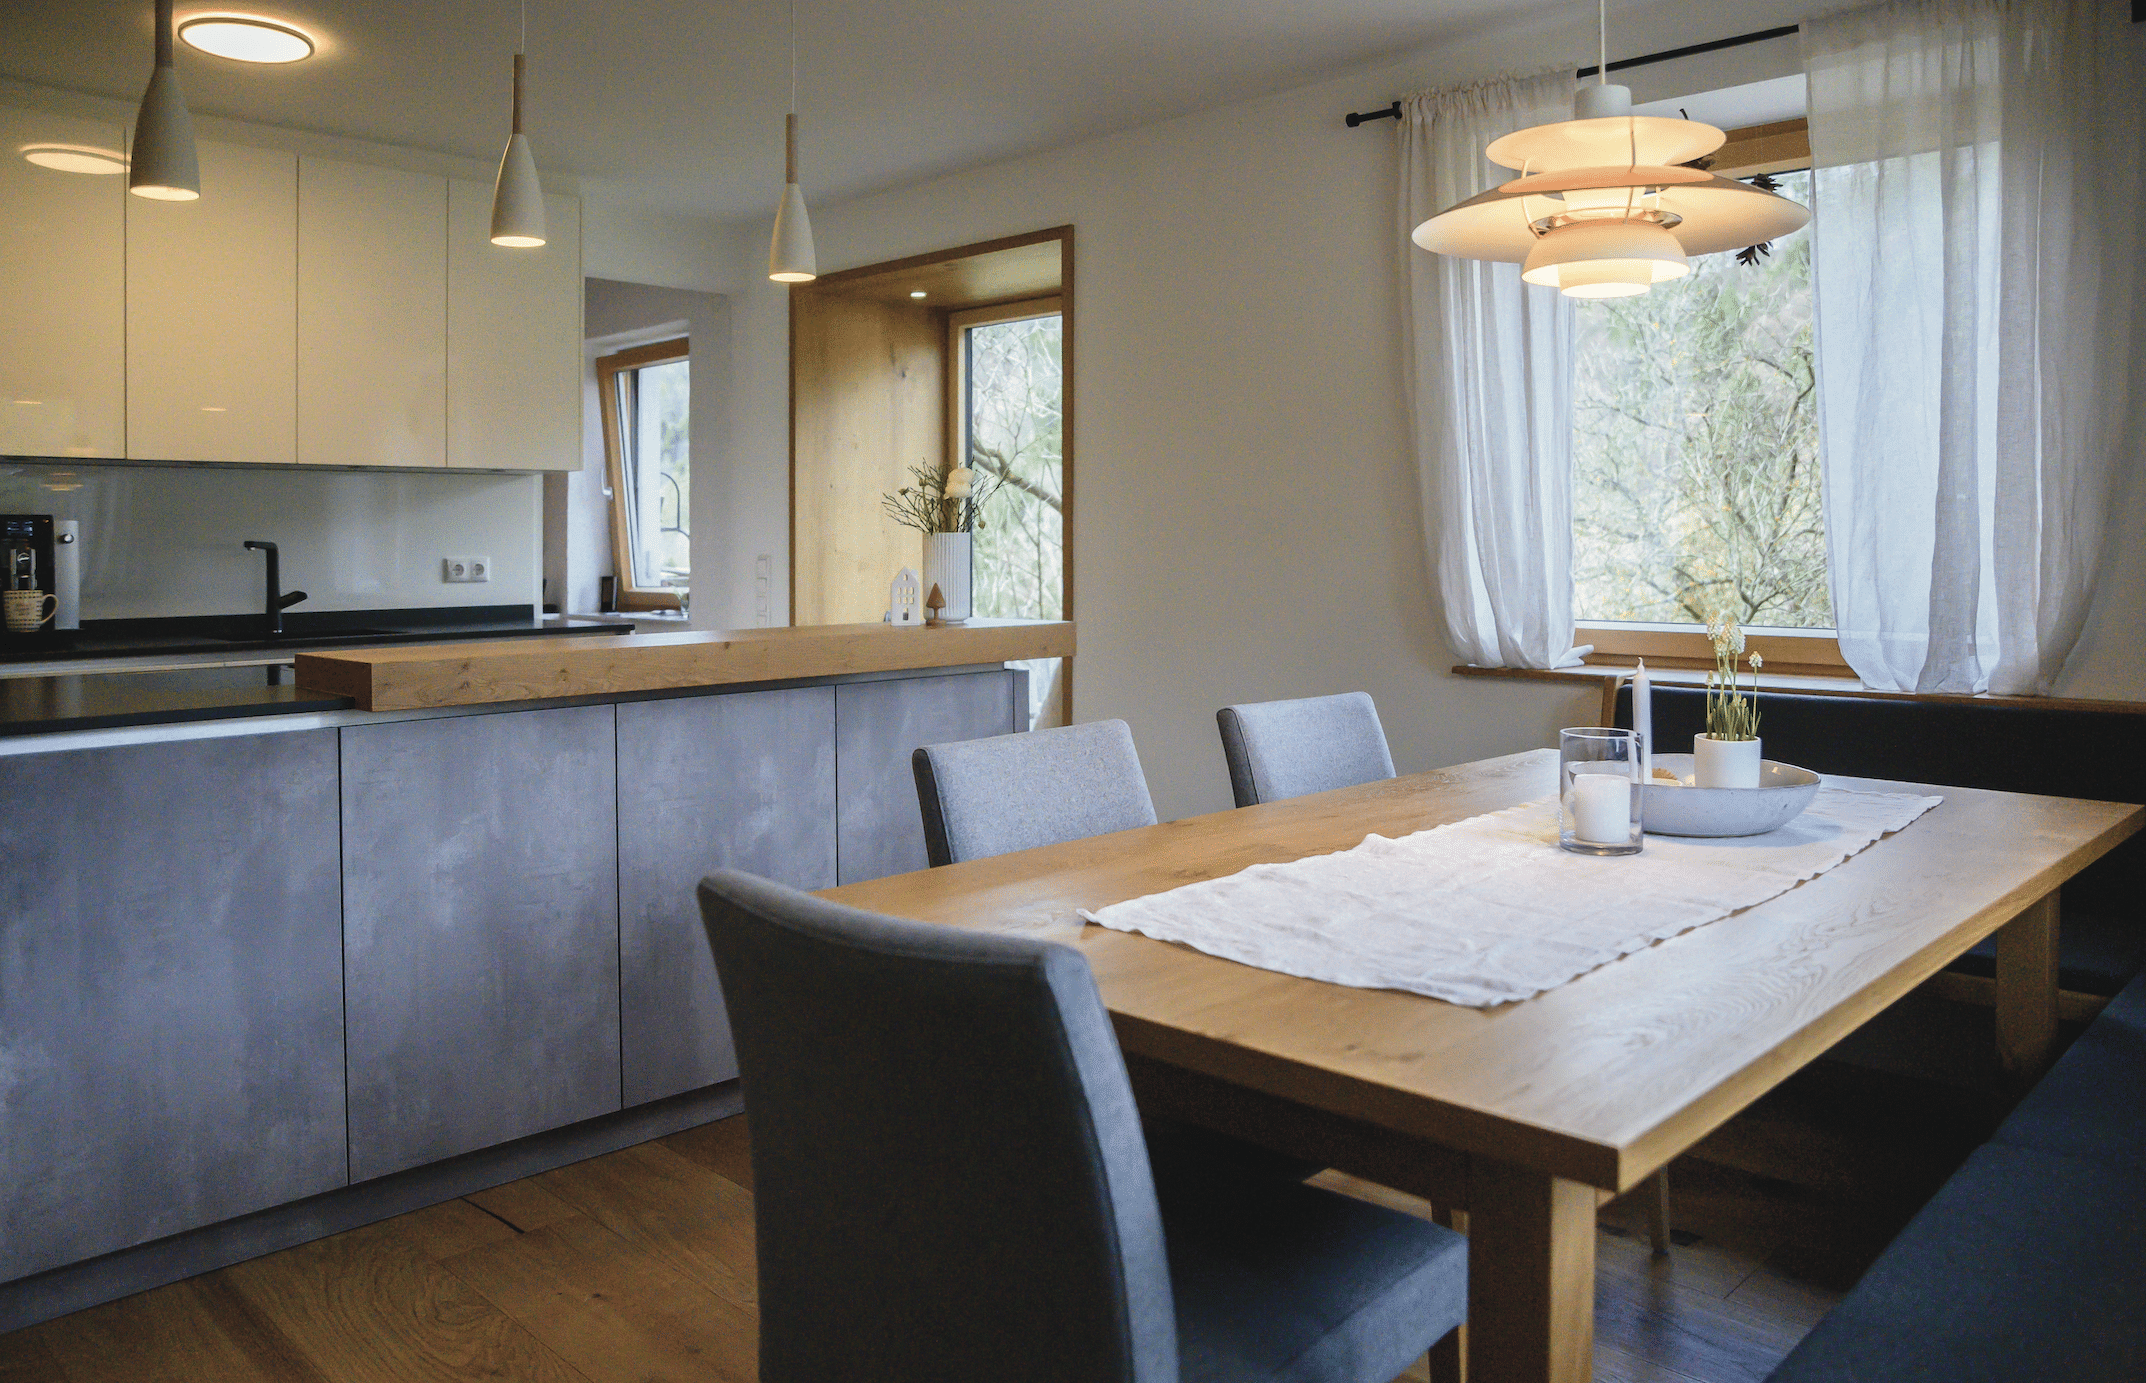 reginaplaza zeigt eine Küche mit grauem Küchenblock, einer schwarzen Arbeitsplatte und den Essbereich mit einem Holztisch und grauen Stühlen. © Thomas Gobauer